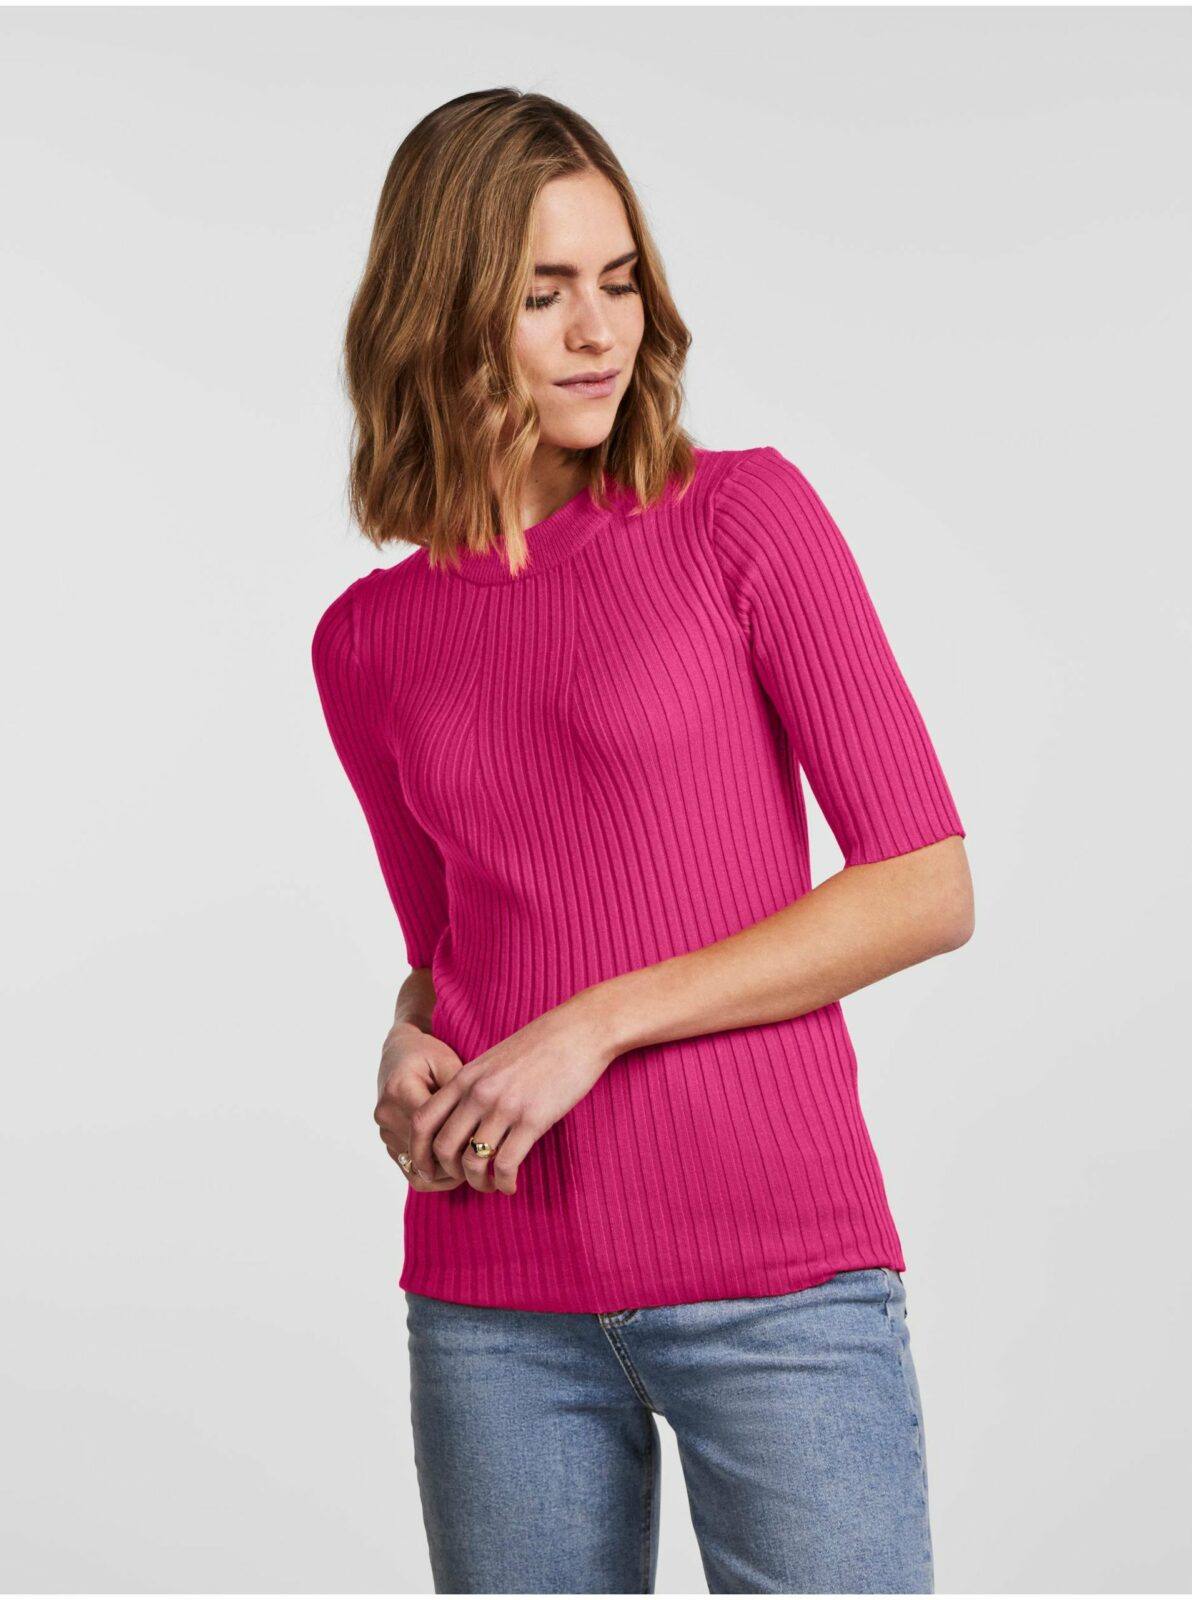 Tmavě růžový dámský žebrovaný lehký svetr